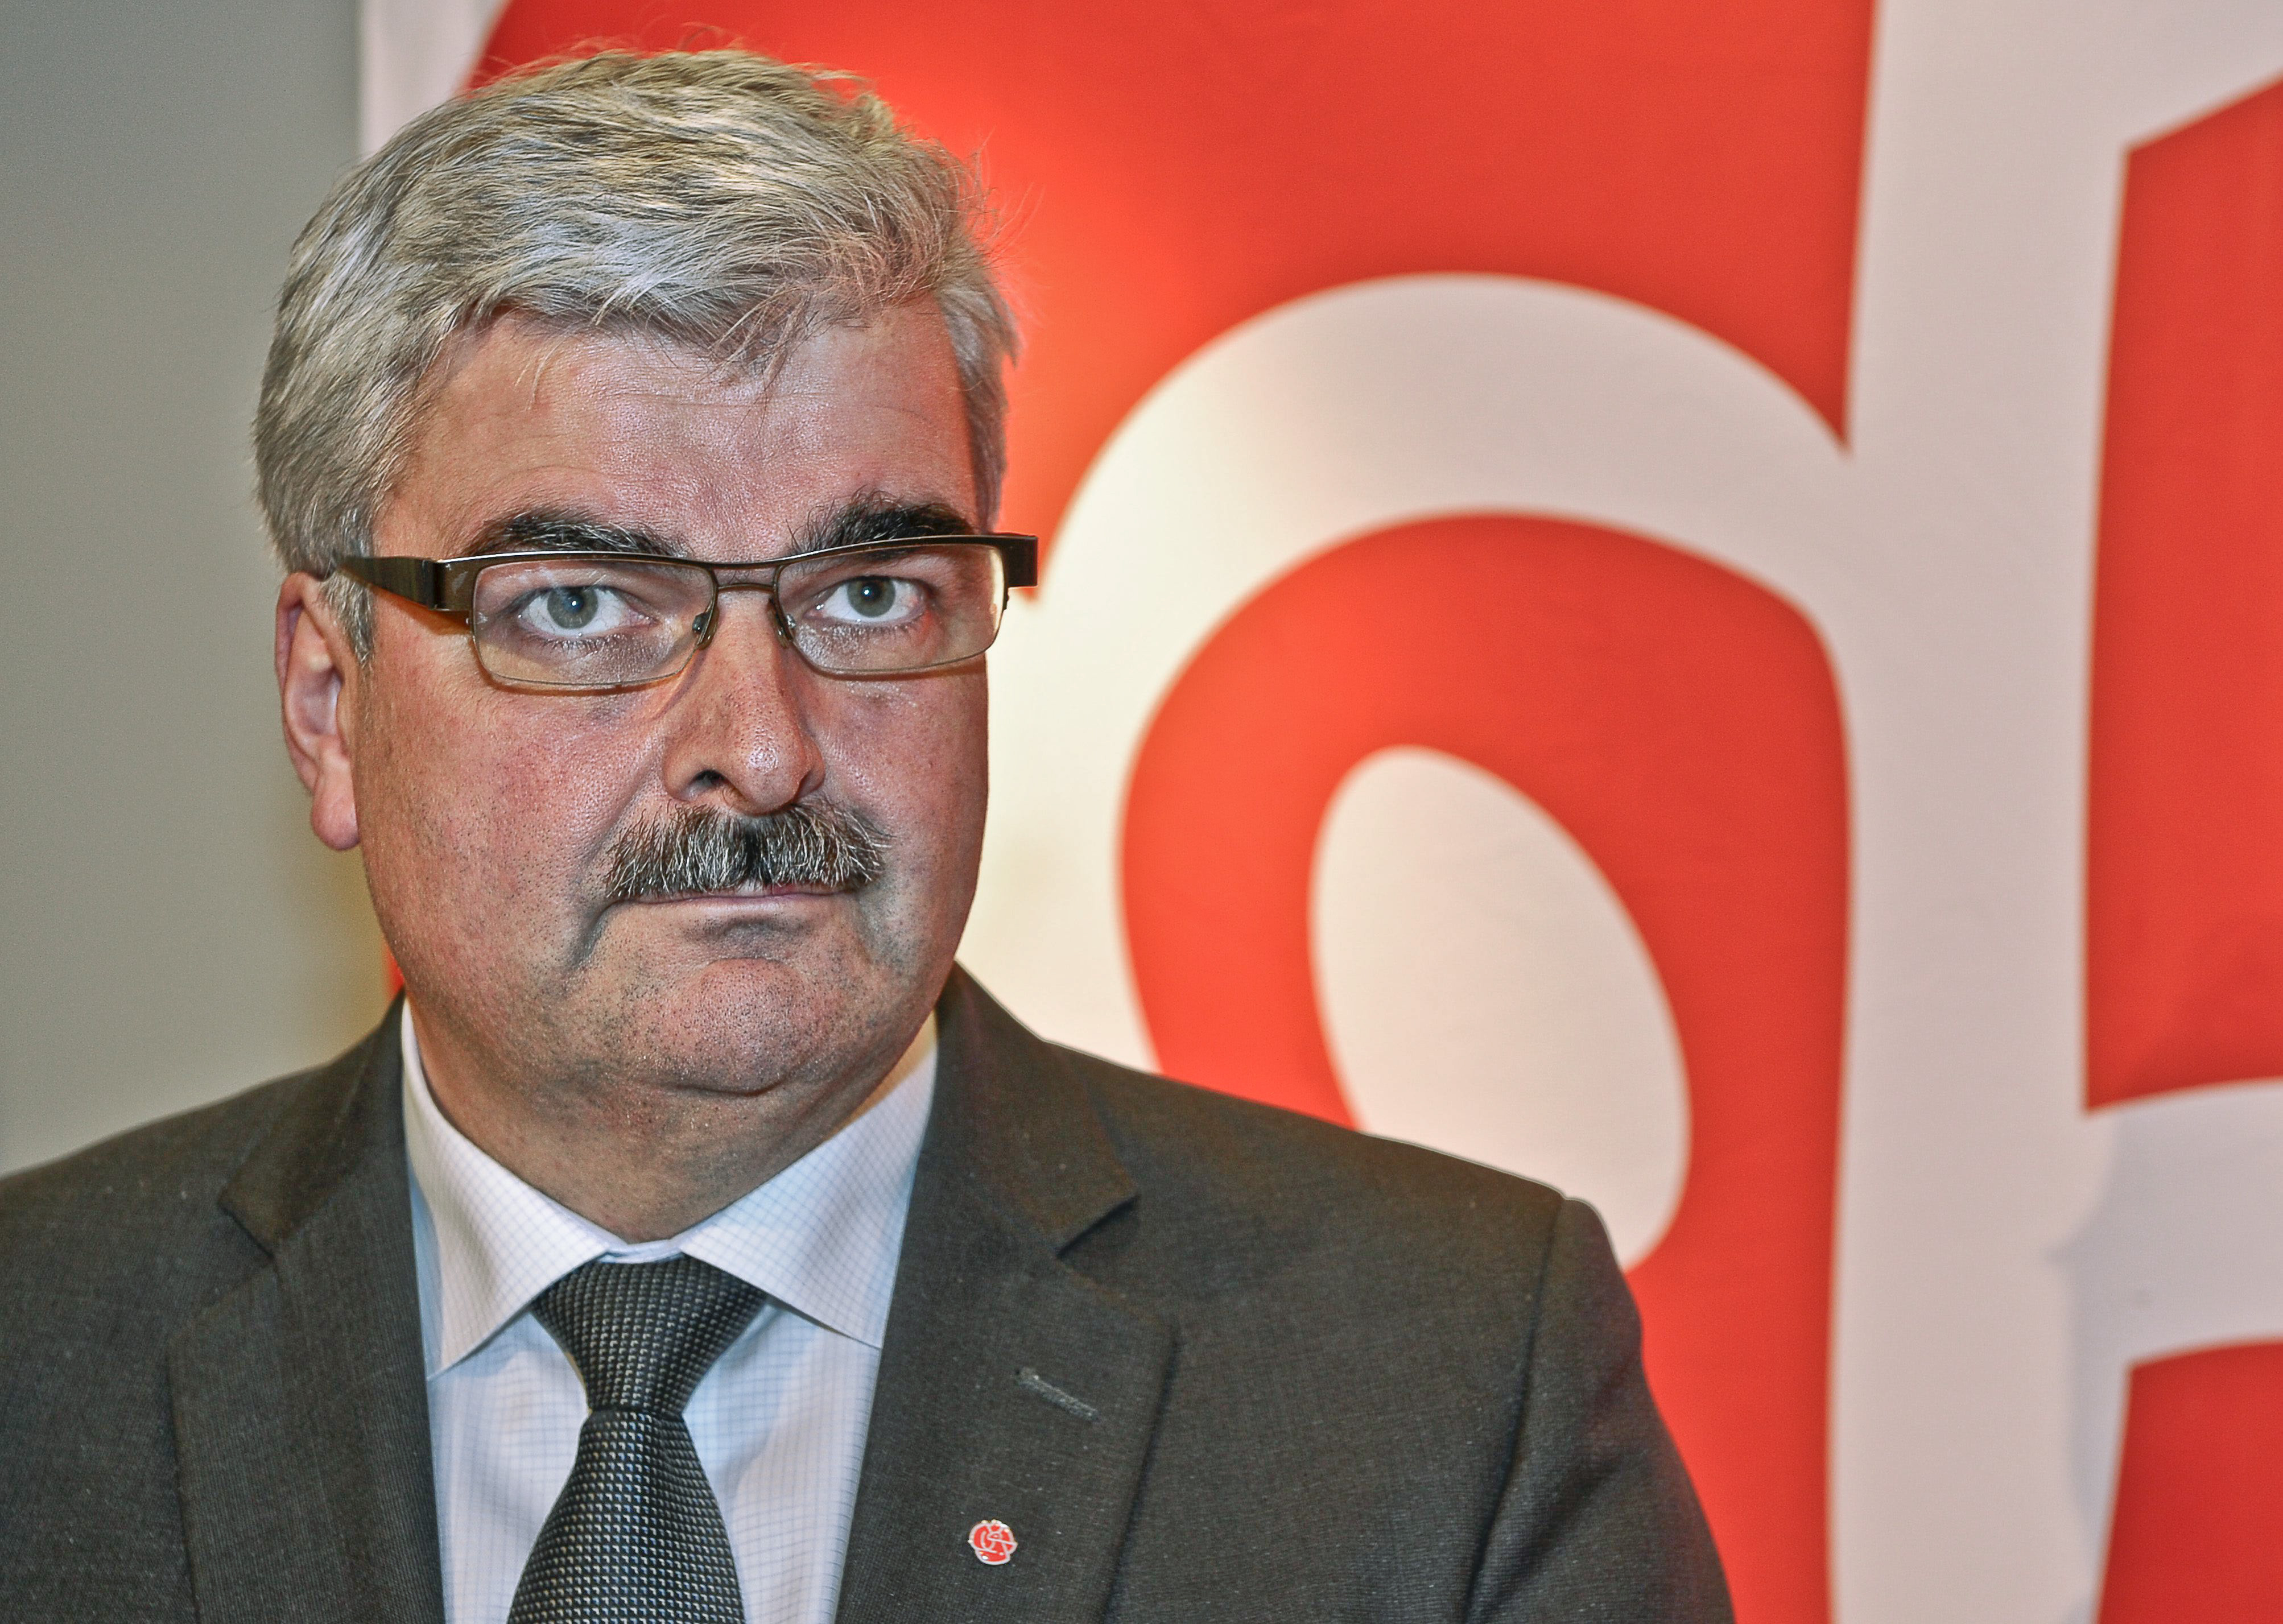 Håkan Juholt fick stanna kvar som partiledare, men det bristande förtroendet för honom syns nu i opinionsundersökningarna.